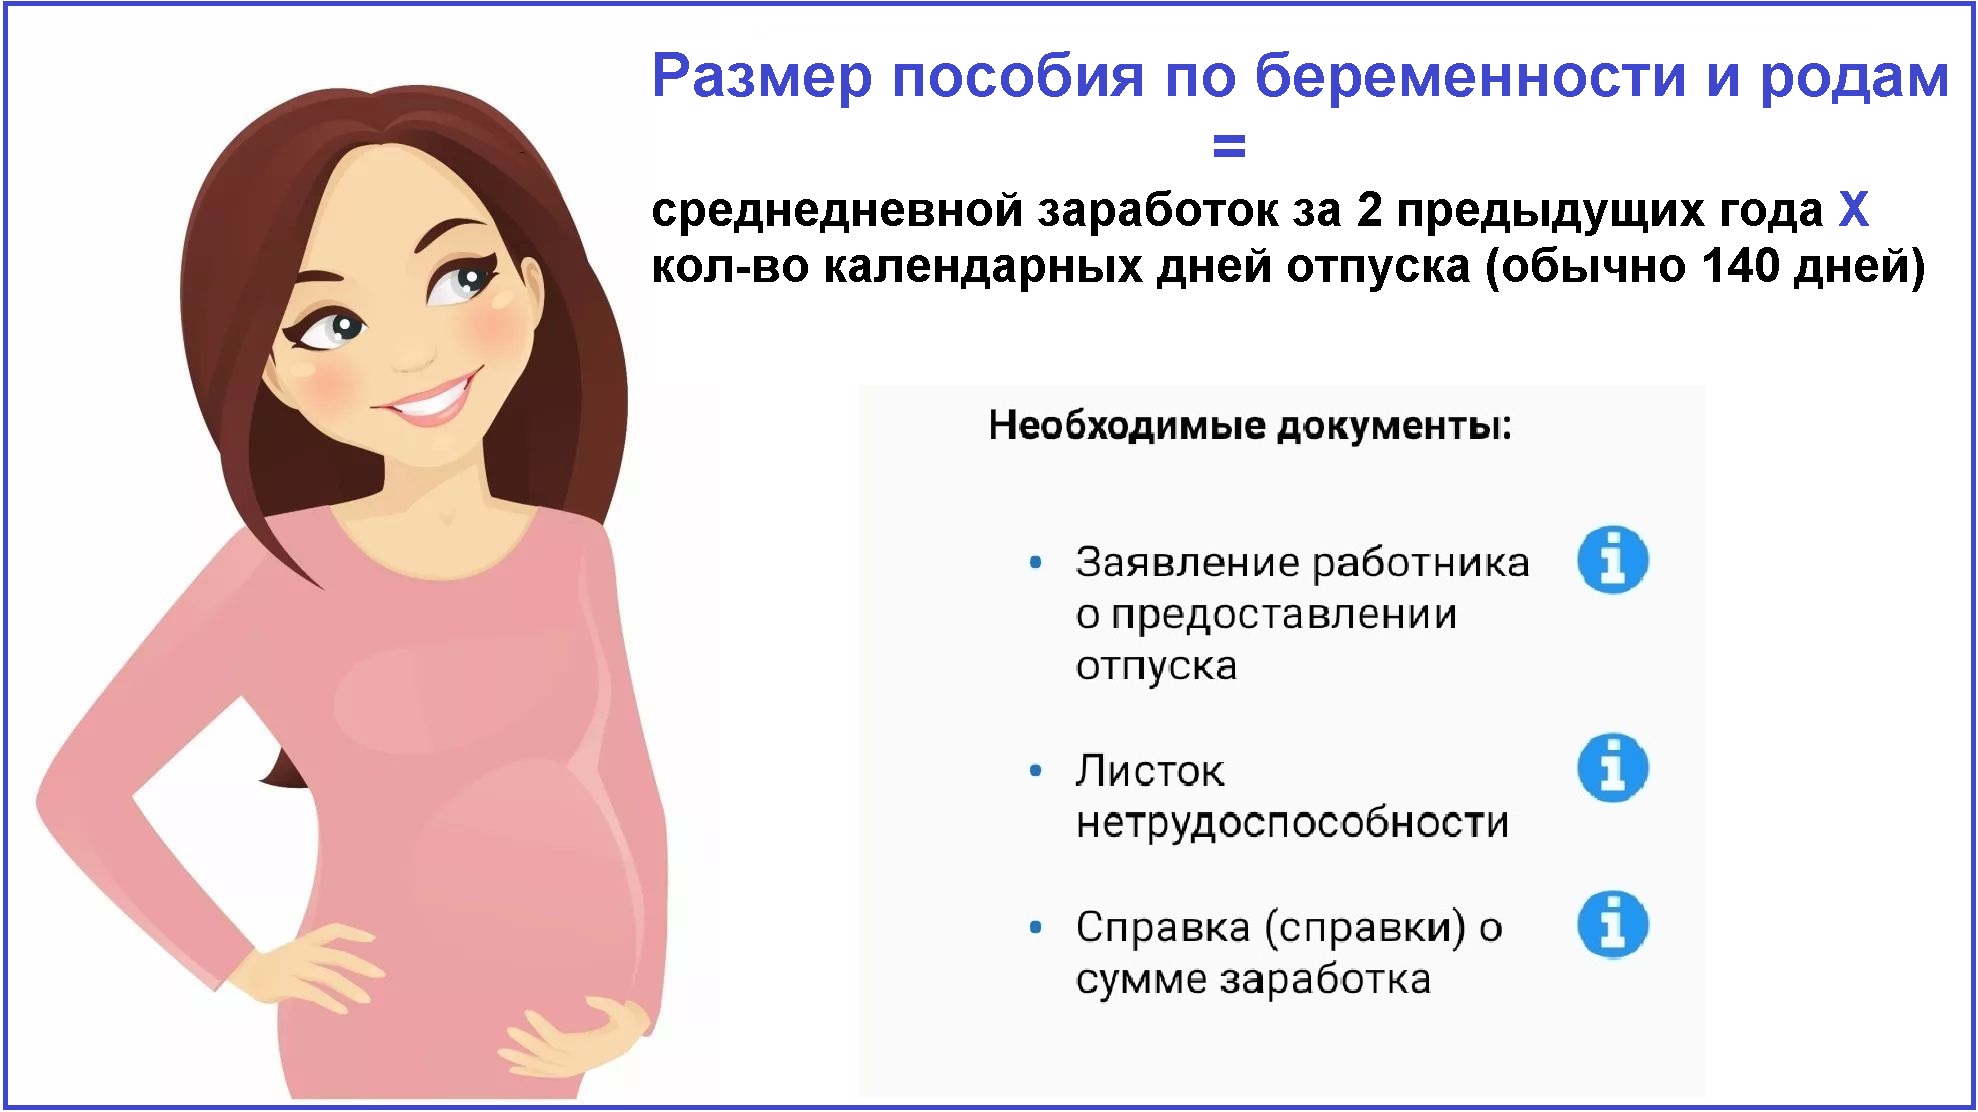 Беременность и роды в разных странах. италия   | материнство - беременность, роды, питание, воспитание